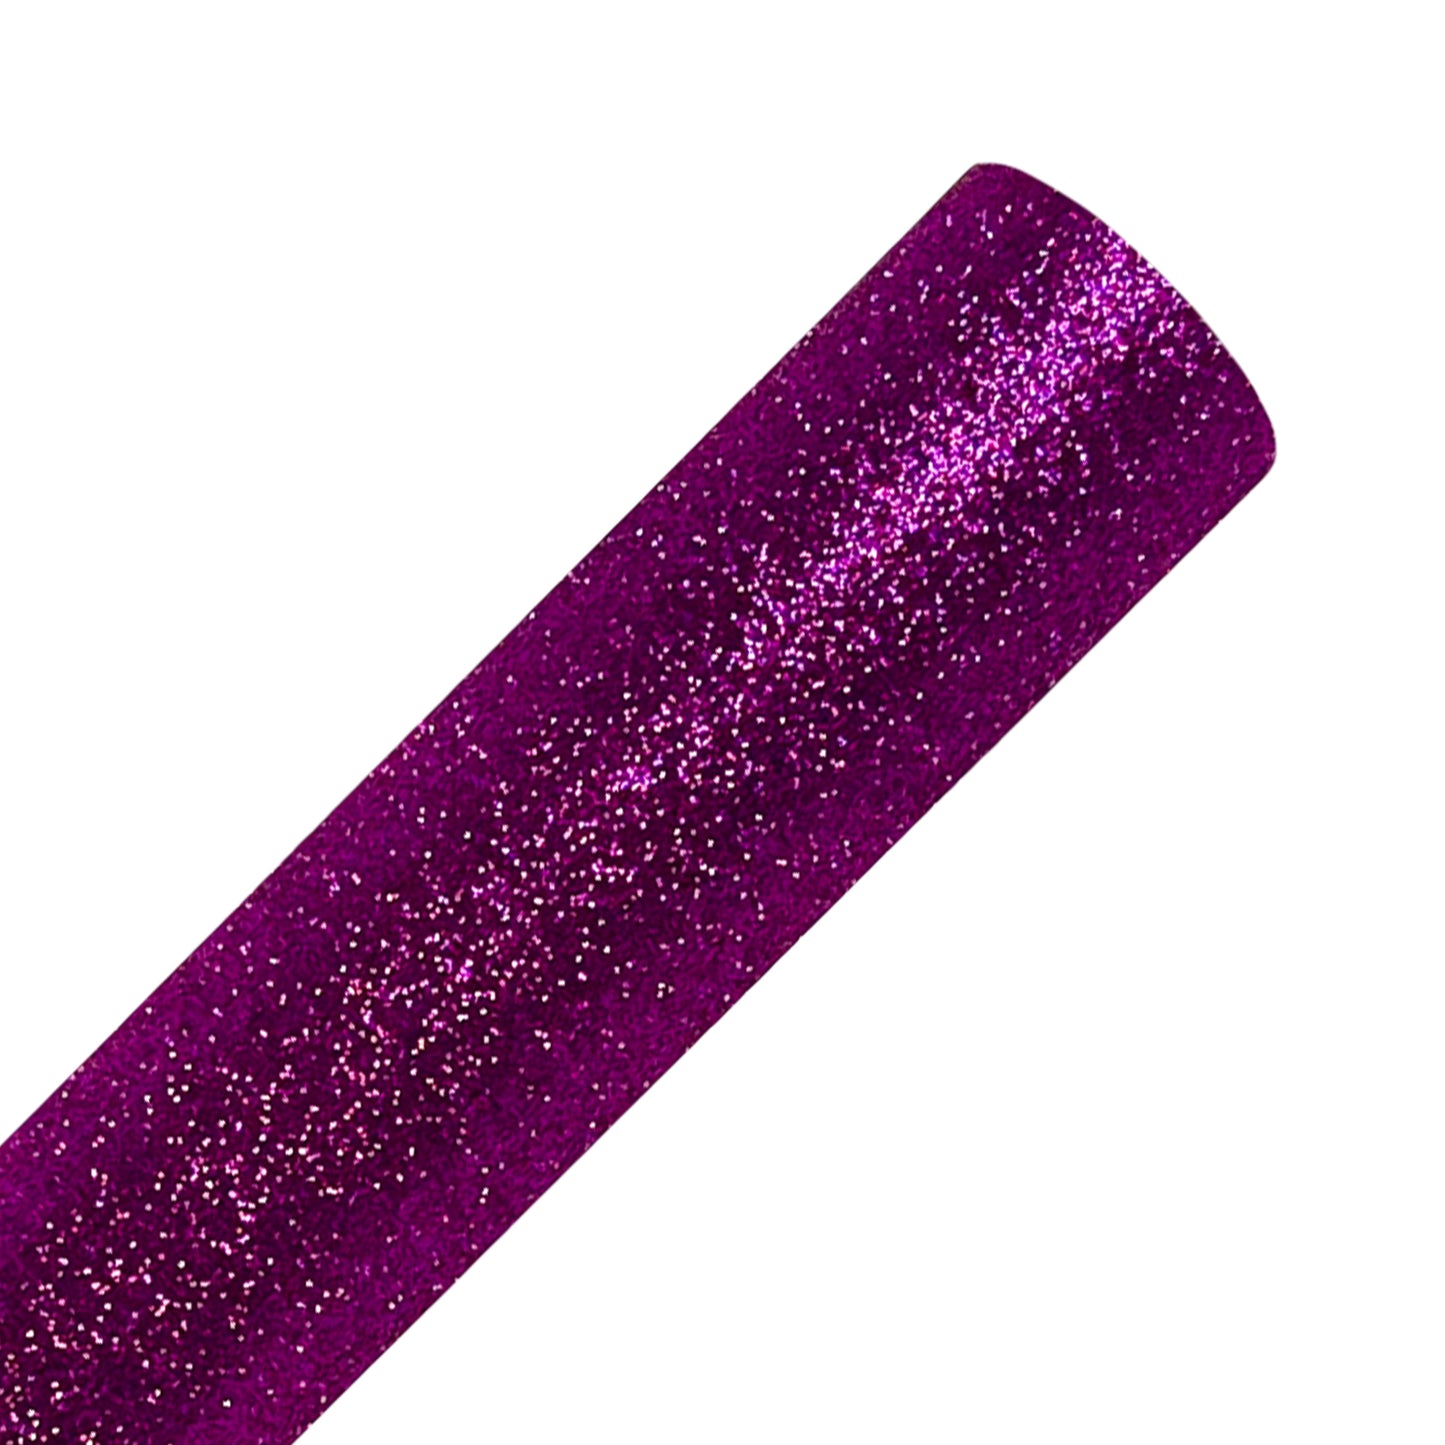 Purple Glitter Heat Transfer Vinyl Sheets By Craftables – shopcraftables